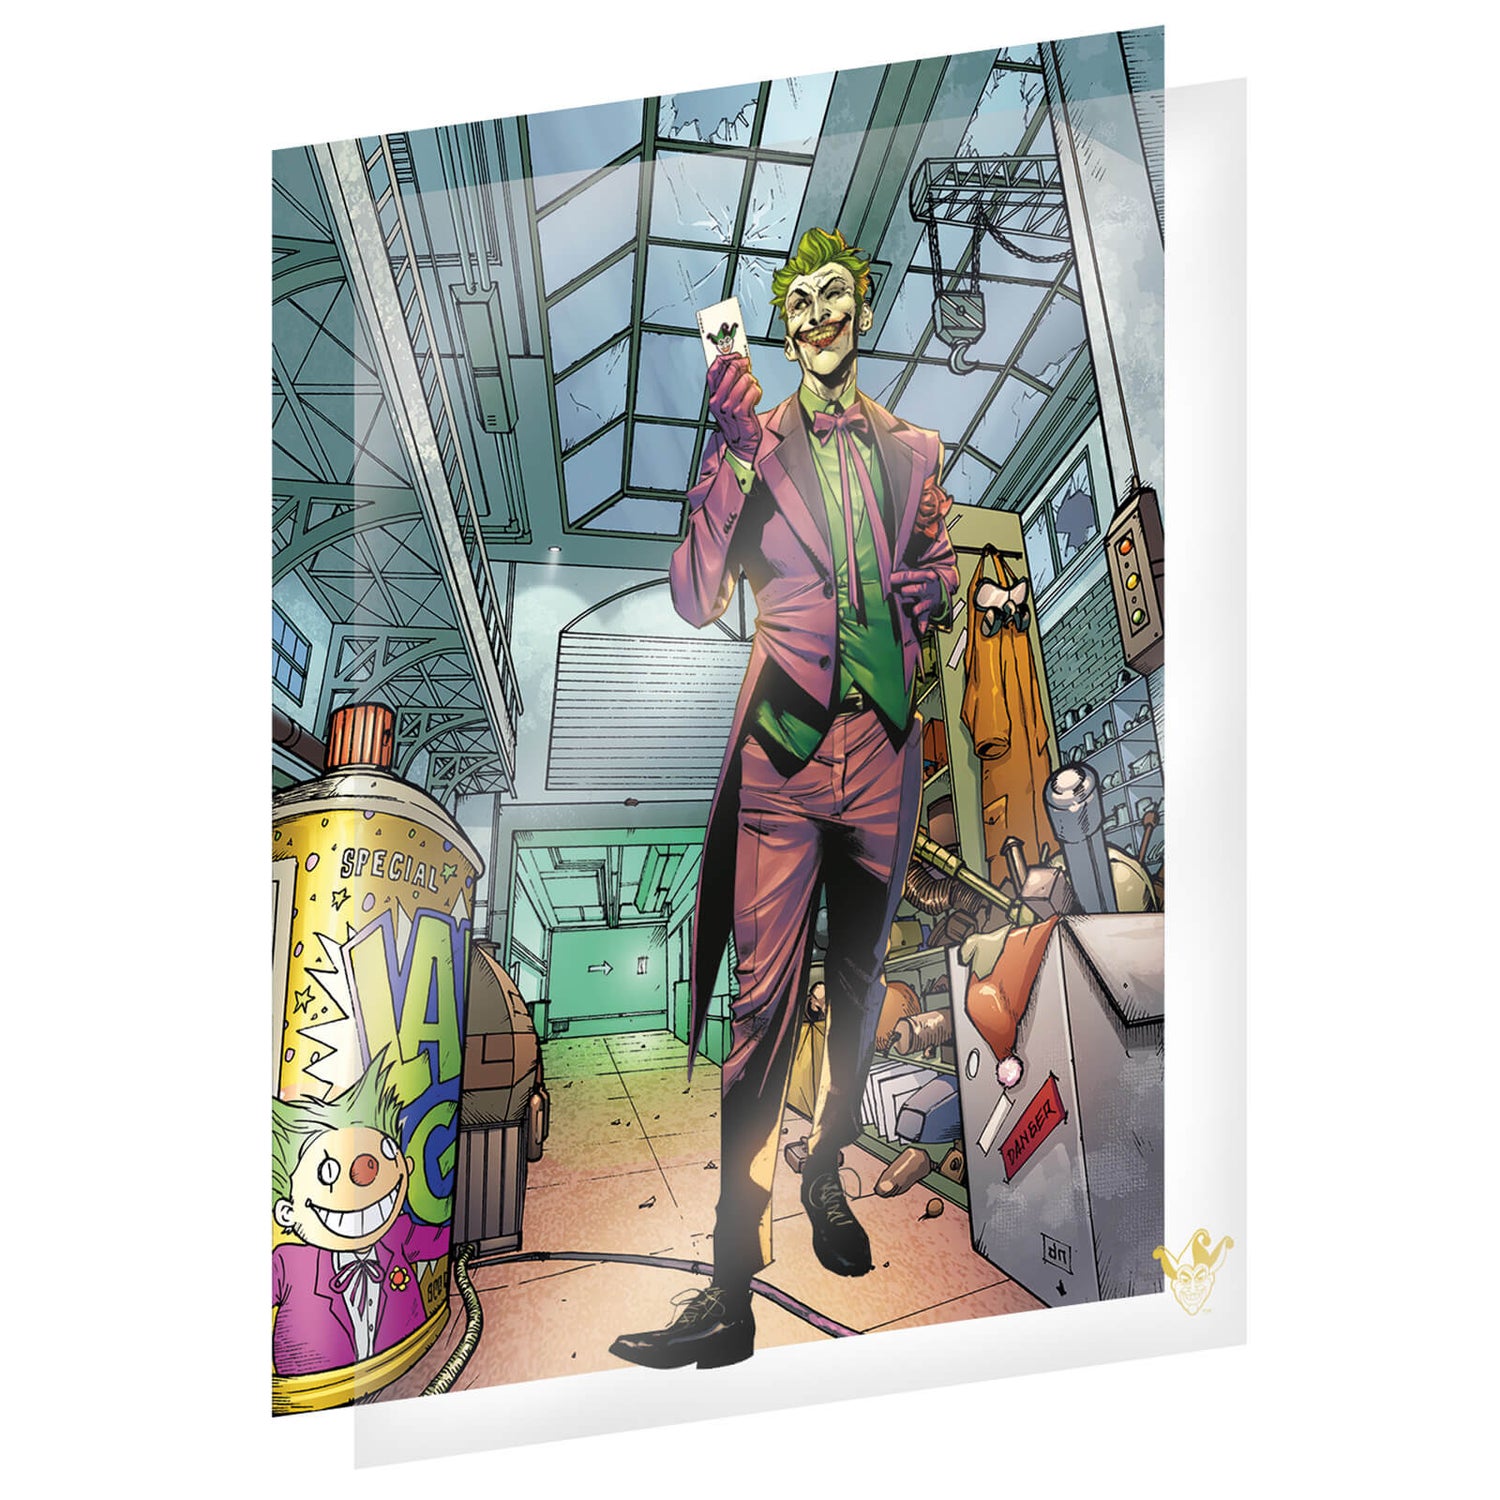 Fan-Cel The Joker Limited Edition Cell Artwork